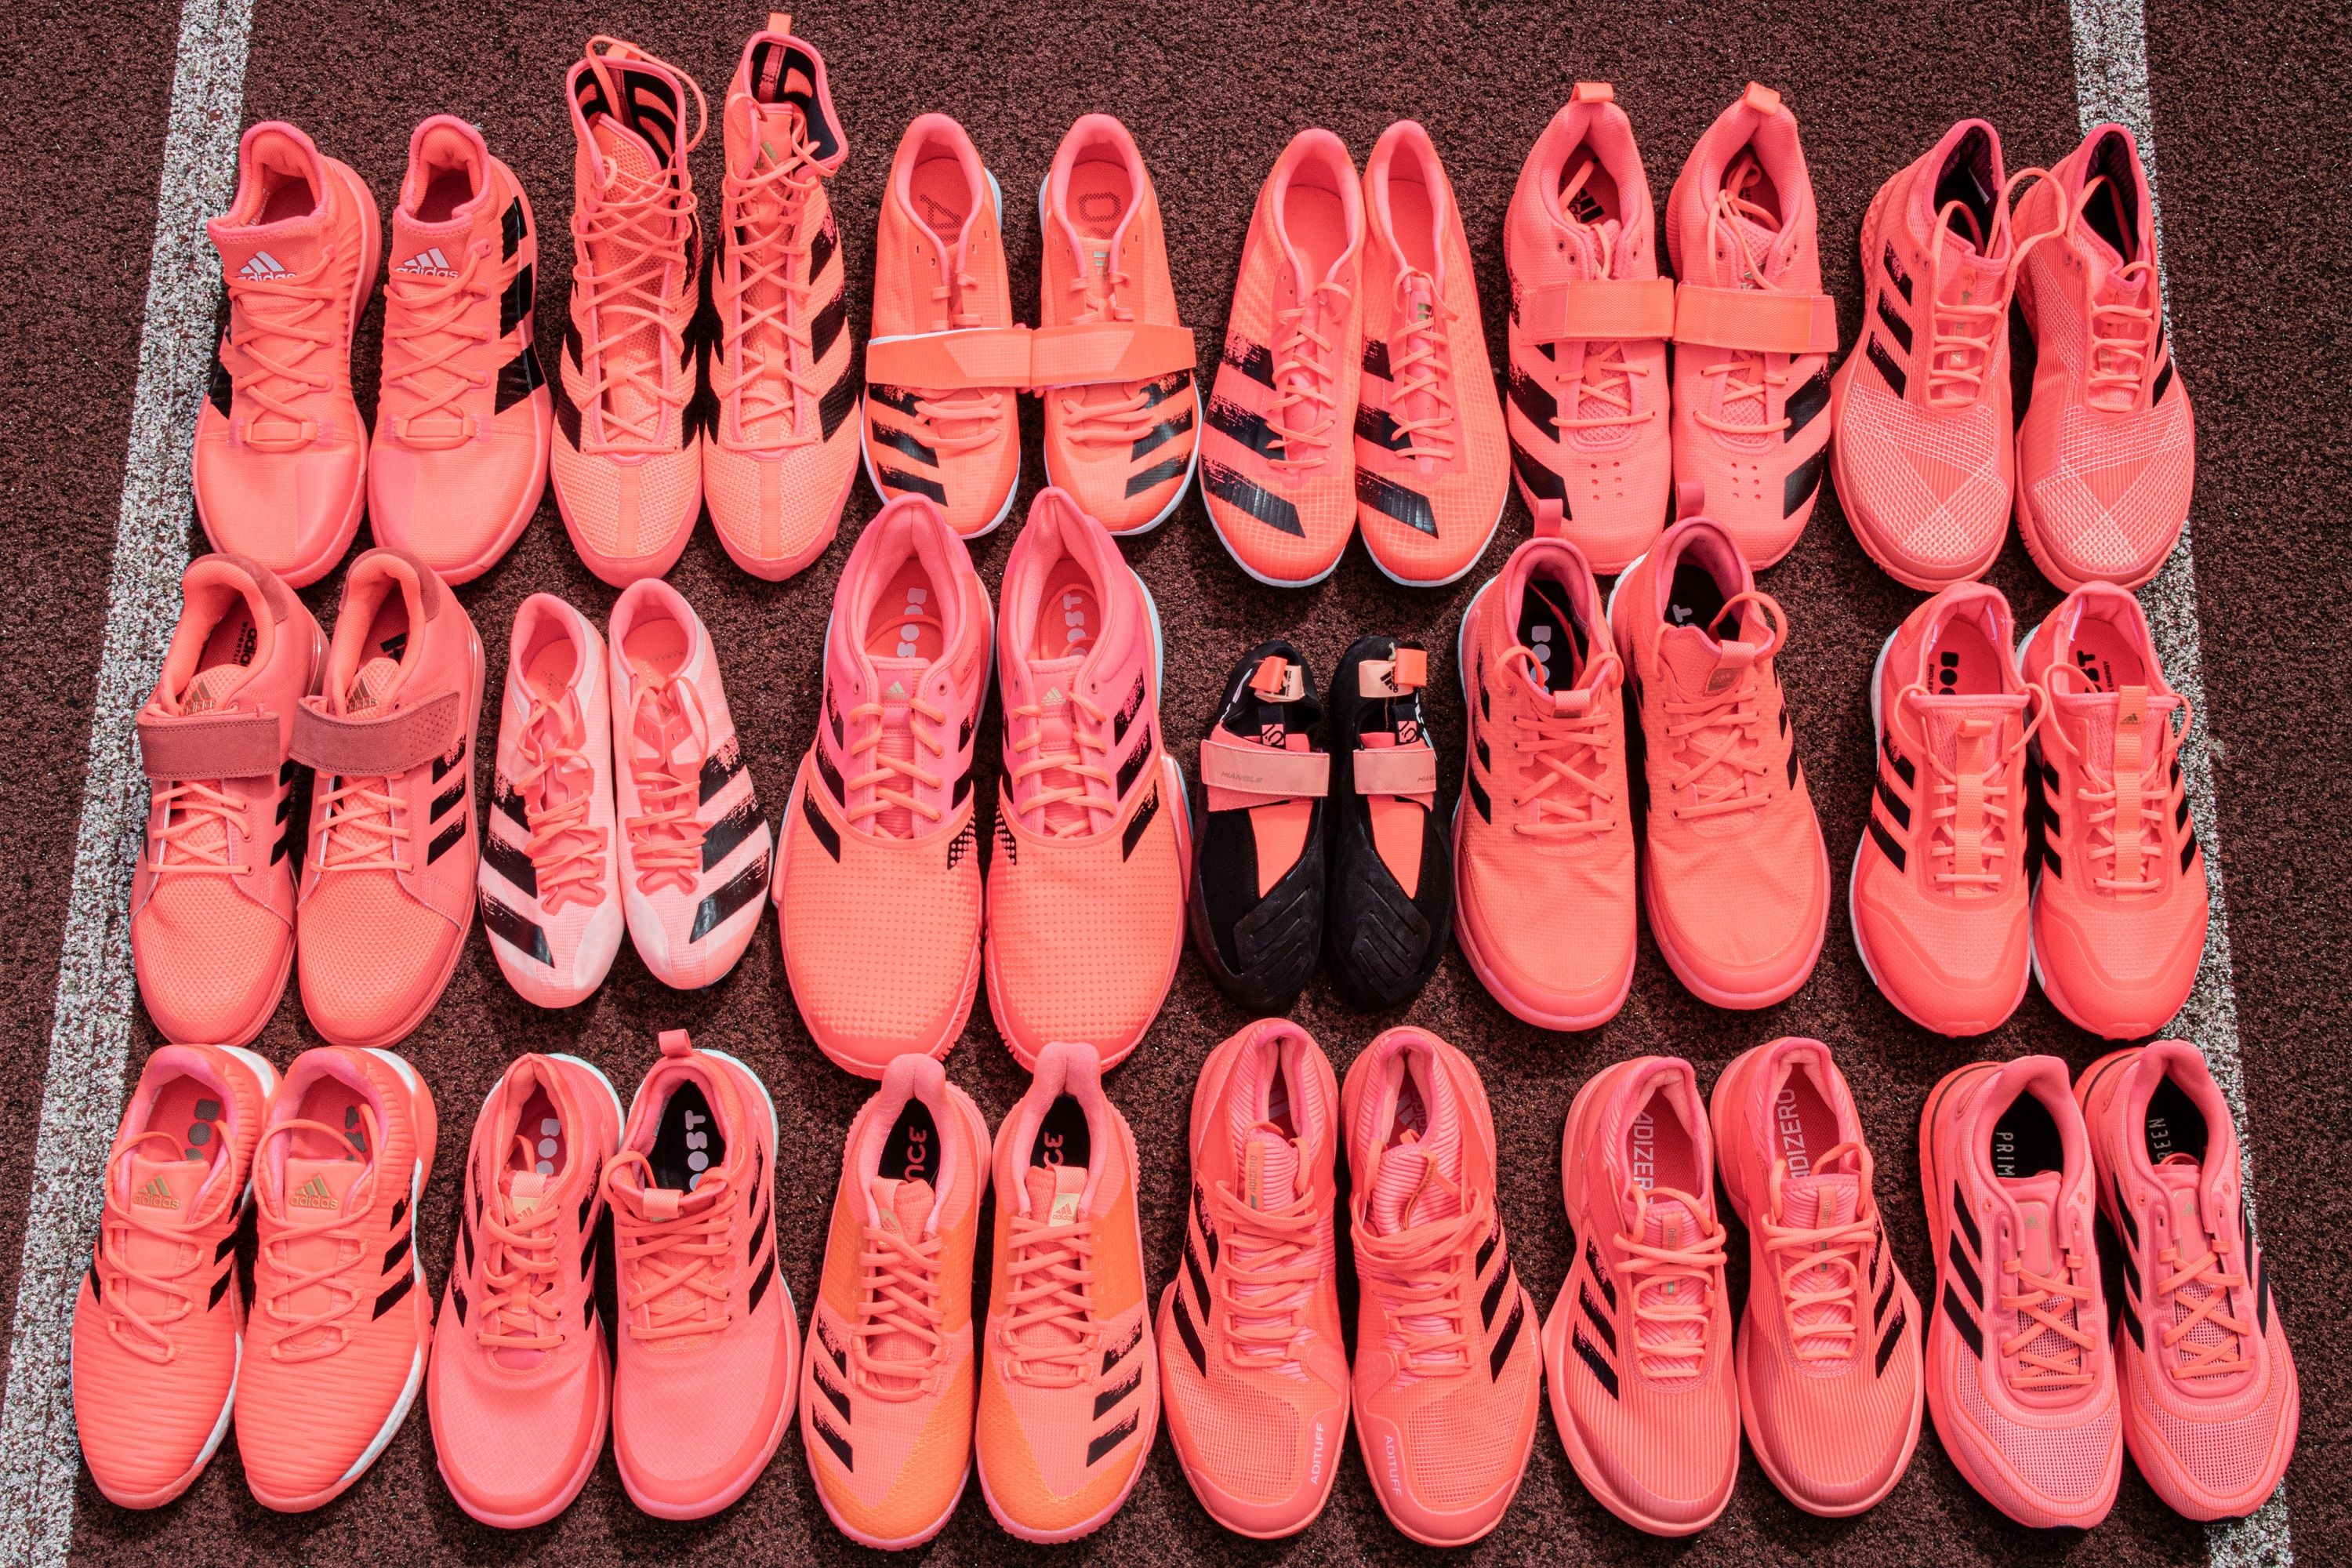 Estadístico Hueso Punto Adidas lanza 41 modelos de zapatillas rosas pensando en Tokio